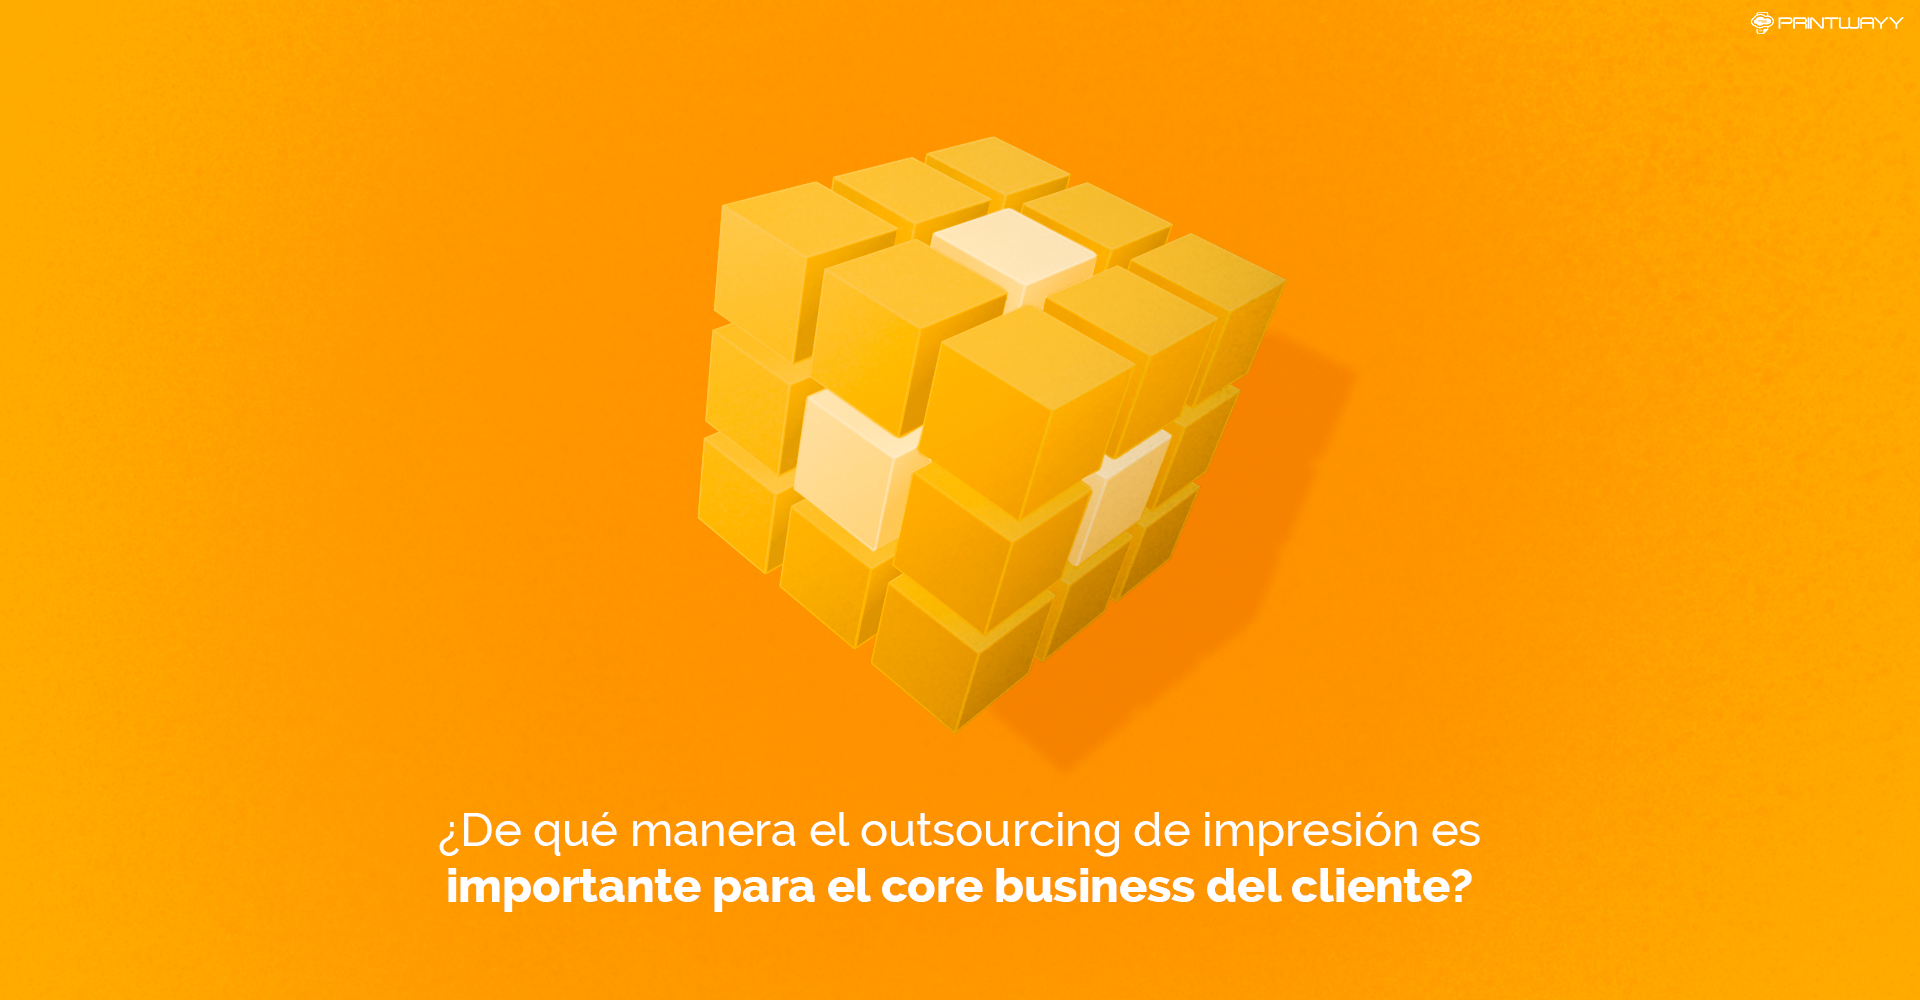 Un cubo de Rubik en amarillo con la pieza central en blanco. Simboliza el negocio principal de la empresa.